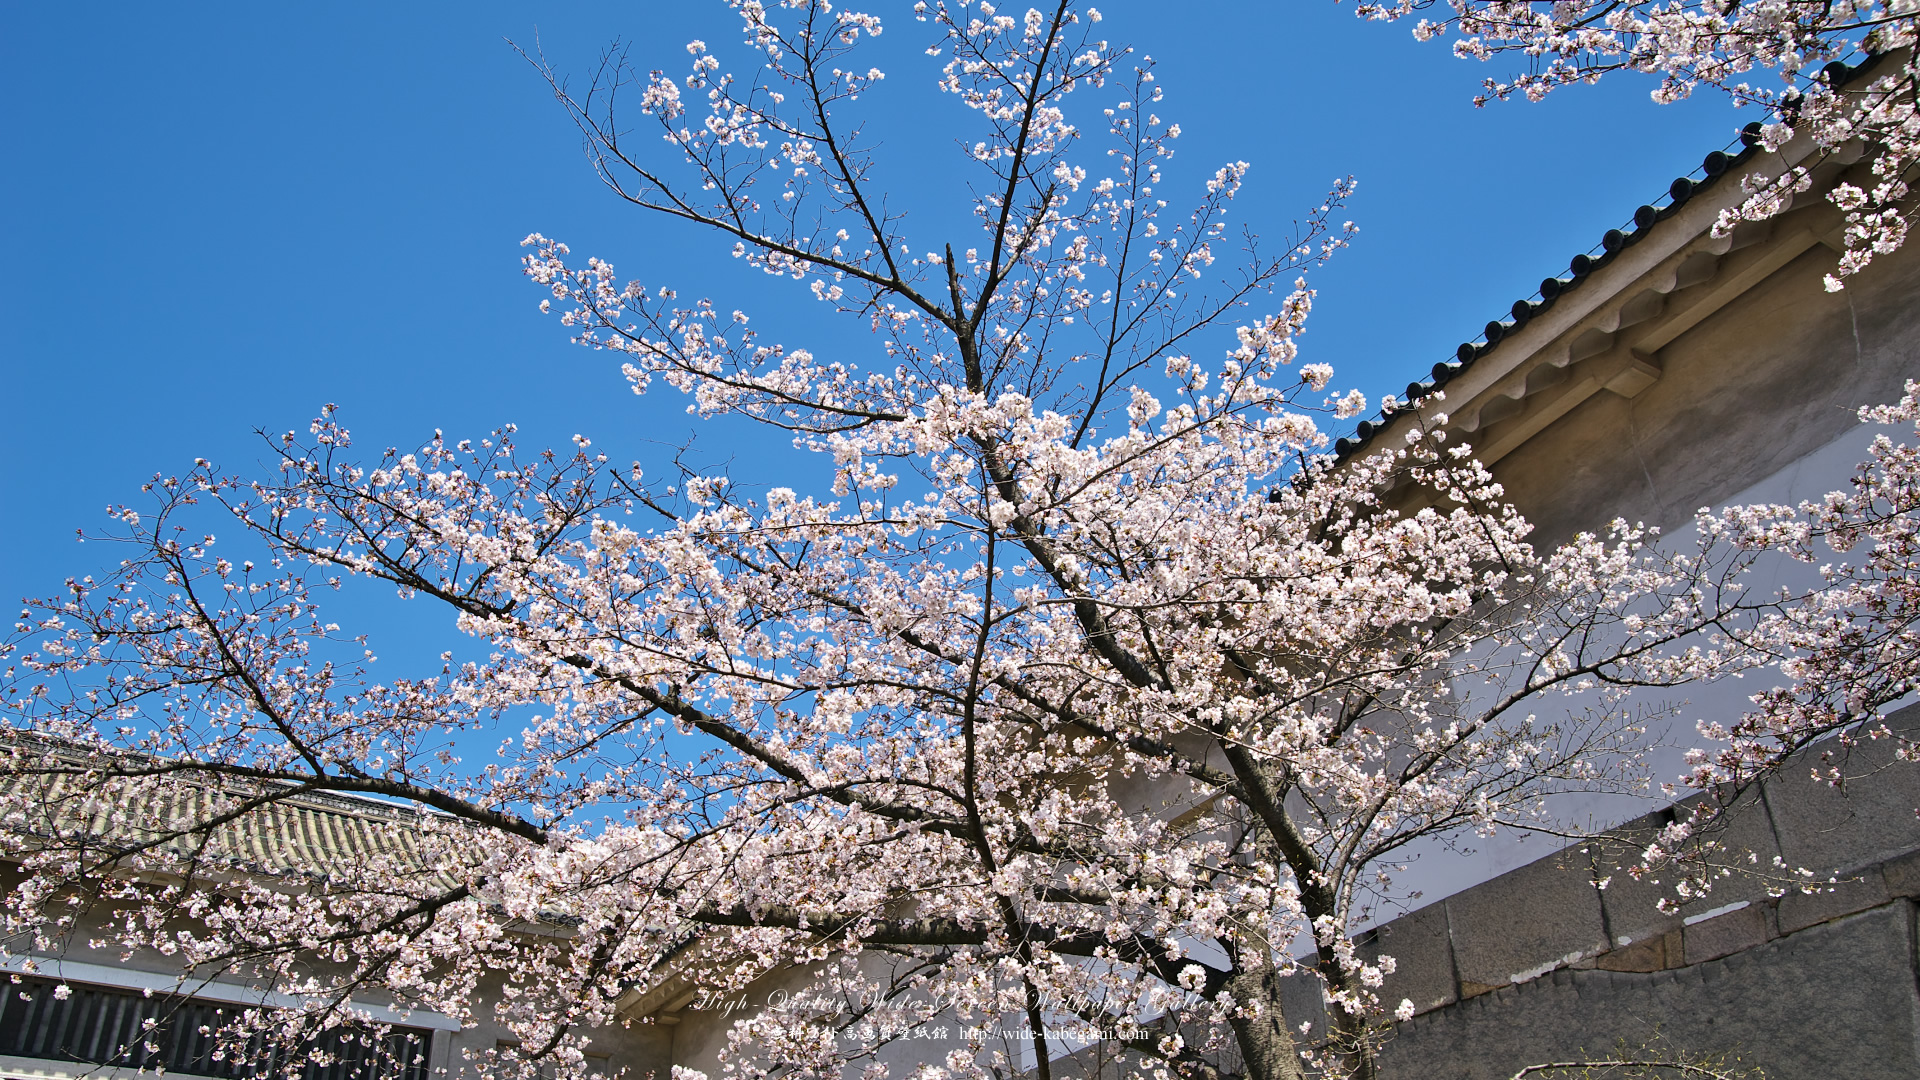 自然風景のワイド壁紙 19x1080 大阪城の桜 1 無料ワイド高画質壁紙館